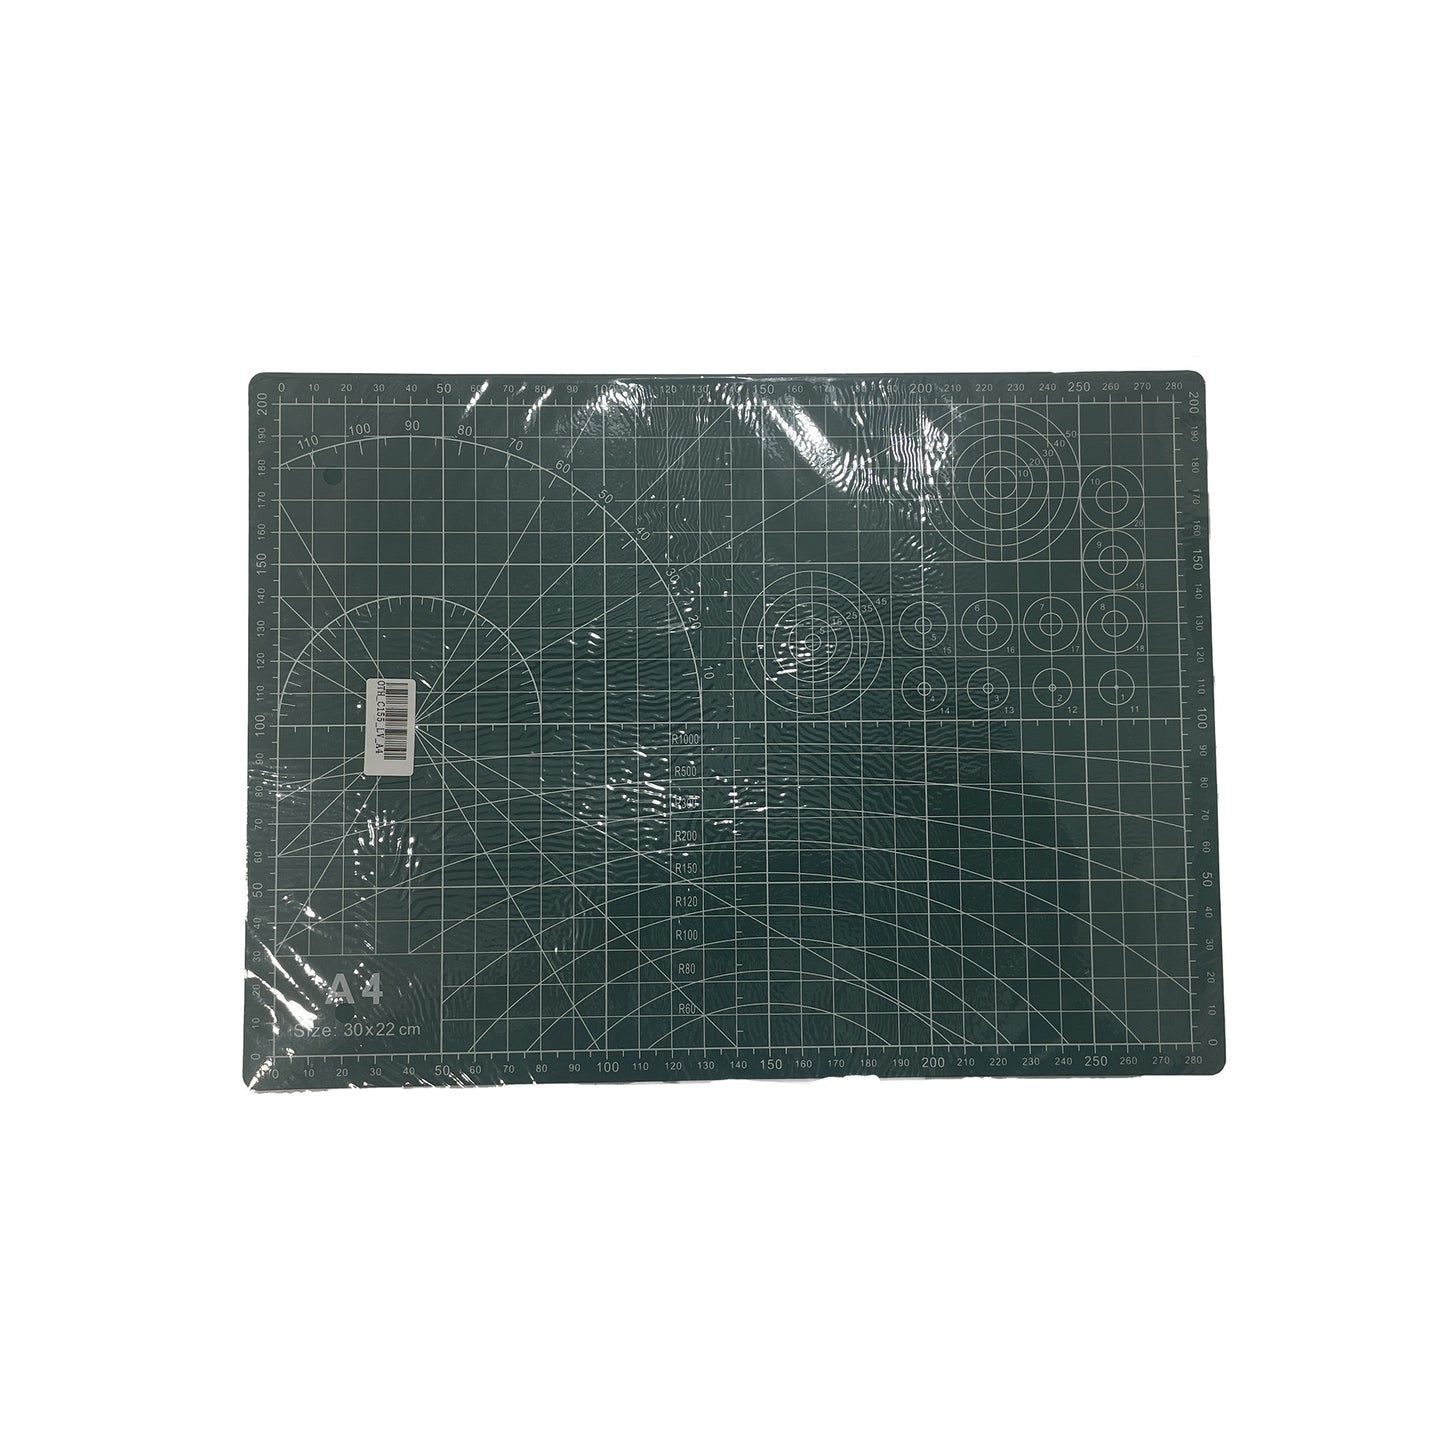 AQ-0021 - пластмассовый коврик для разметки, формата А4